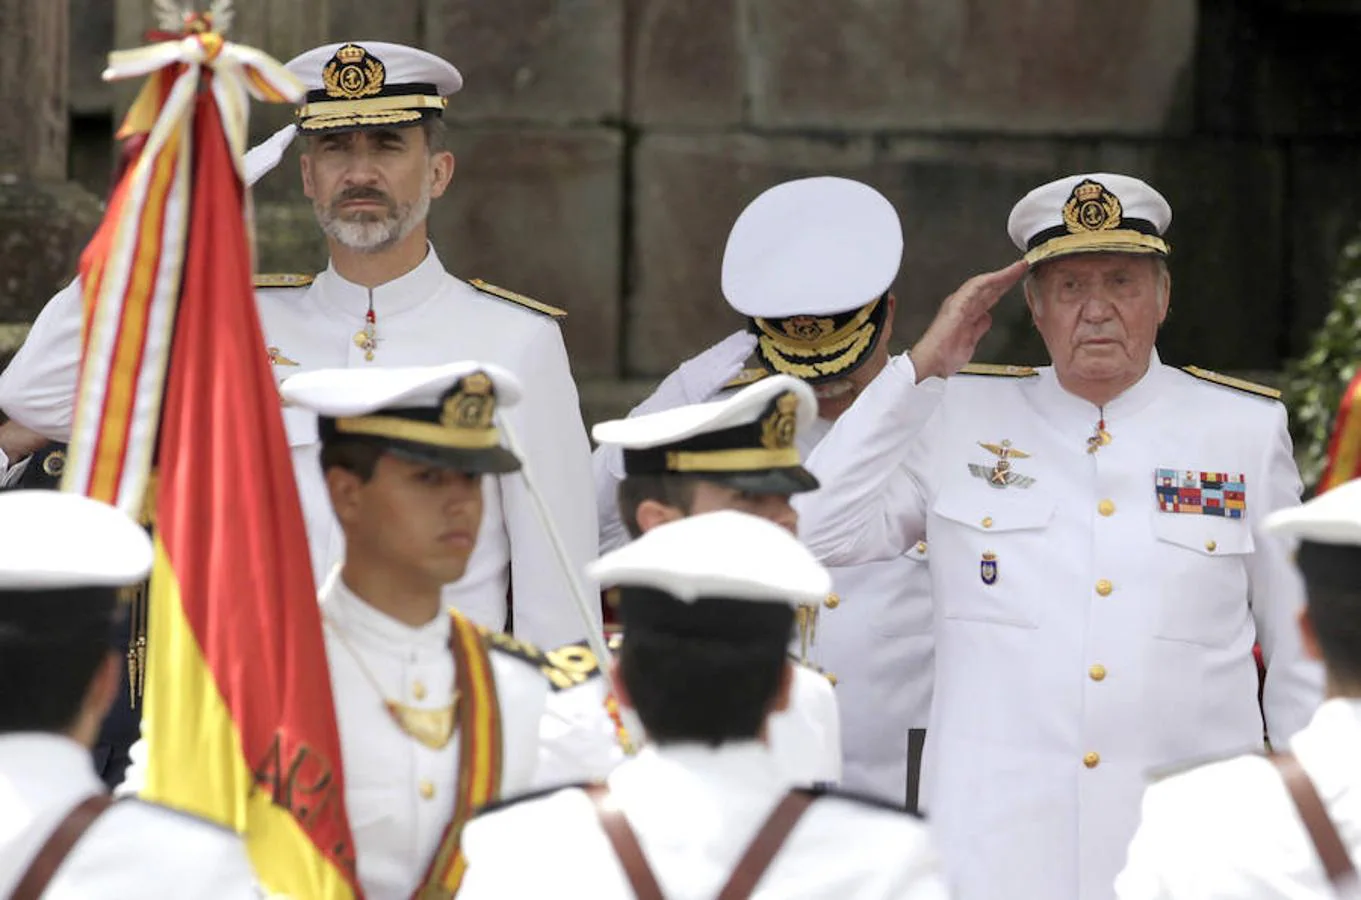 El Rey Felipe VI y su padre, Don Juan Carlos I, presiden el desfile que conmemora el 300 aniversario de la Real Compañía de Guardiamarinas